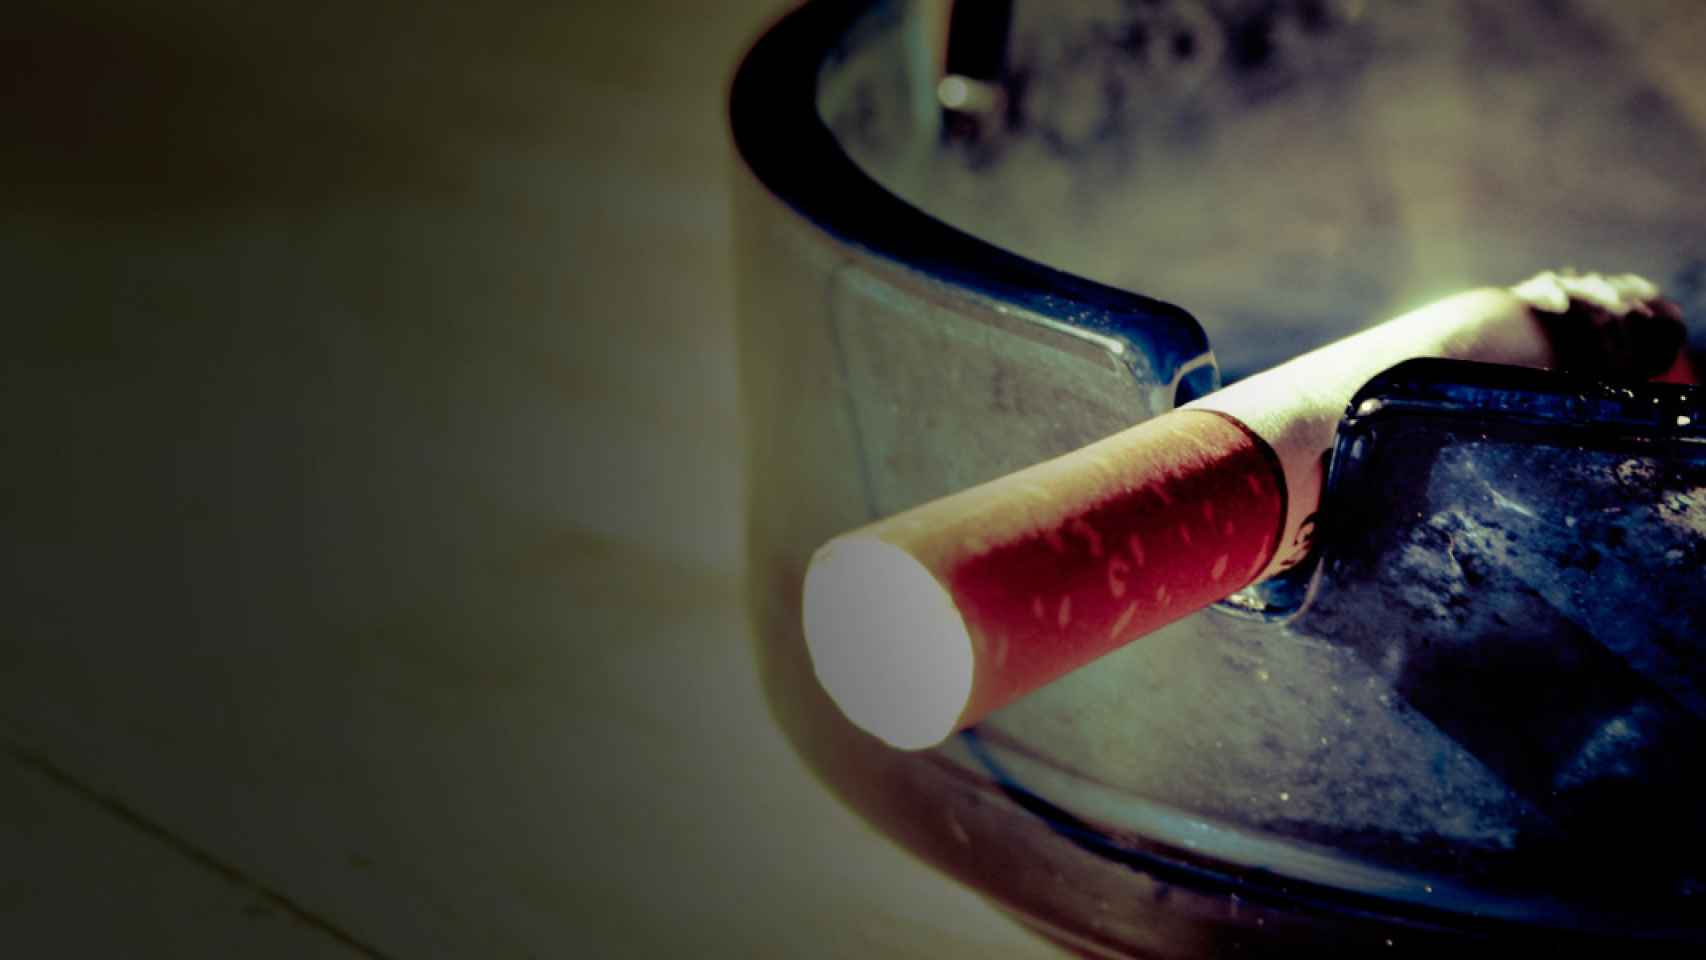 Un cigarrillo se consume en un cenicero día/ CG